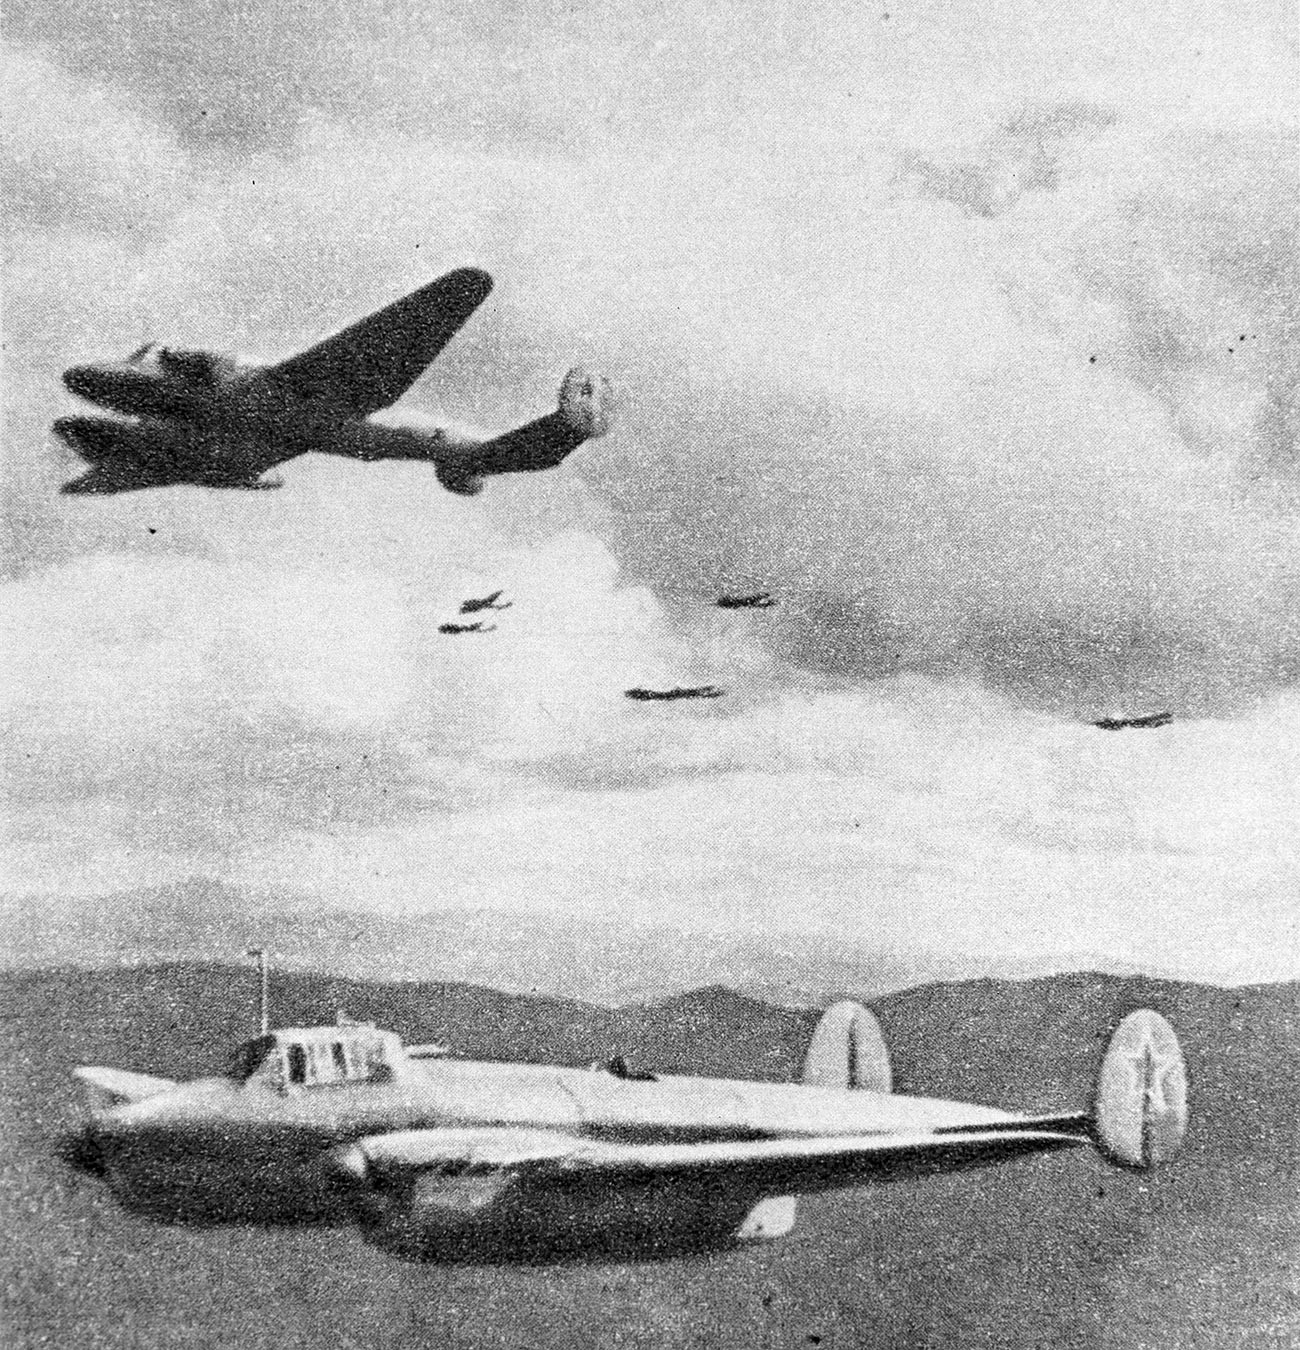 Soviet bombers in China.